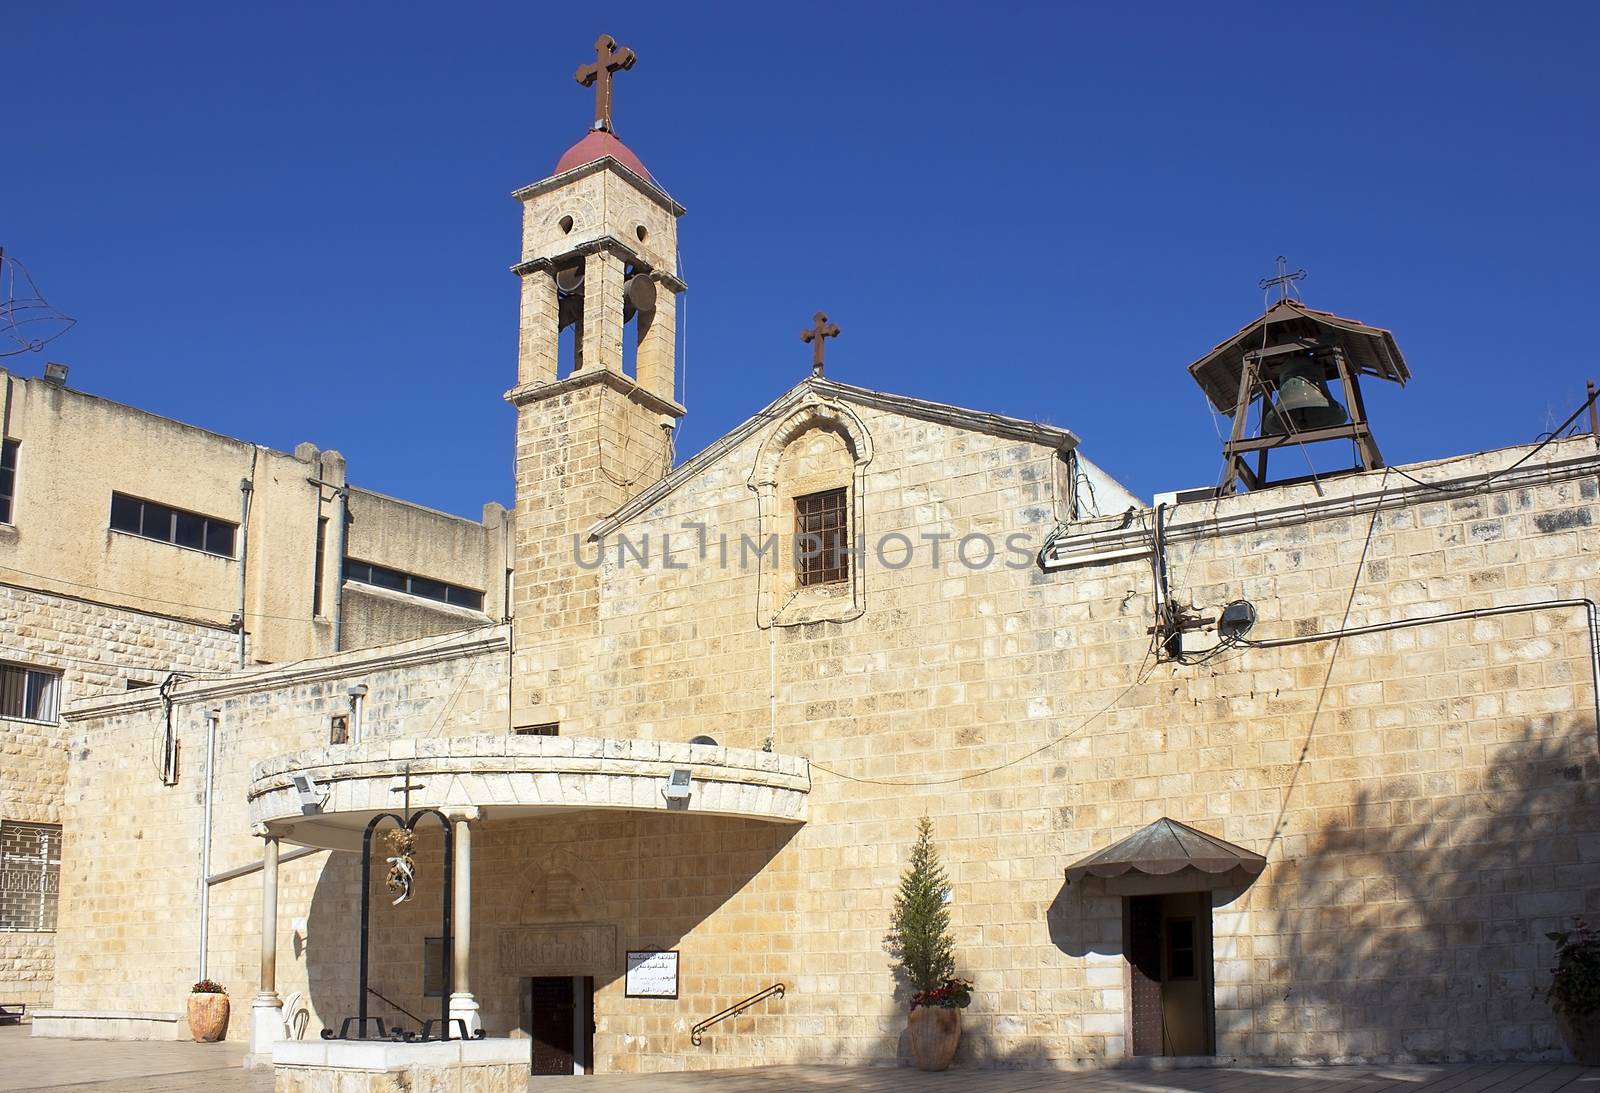 Greek Orthodox Church of the Annunciation in Nazareth, lower Galilee, Israel